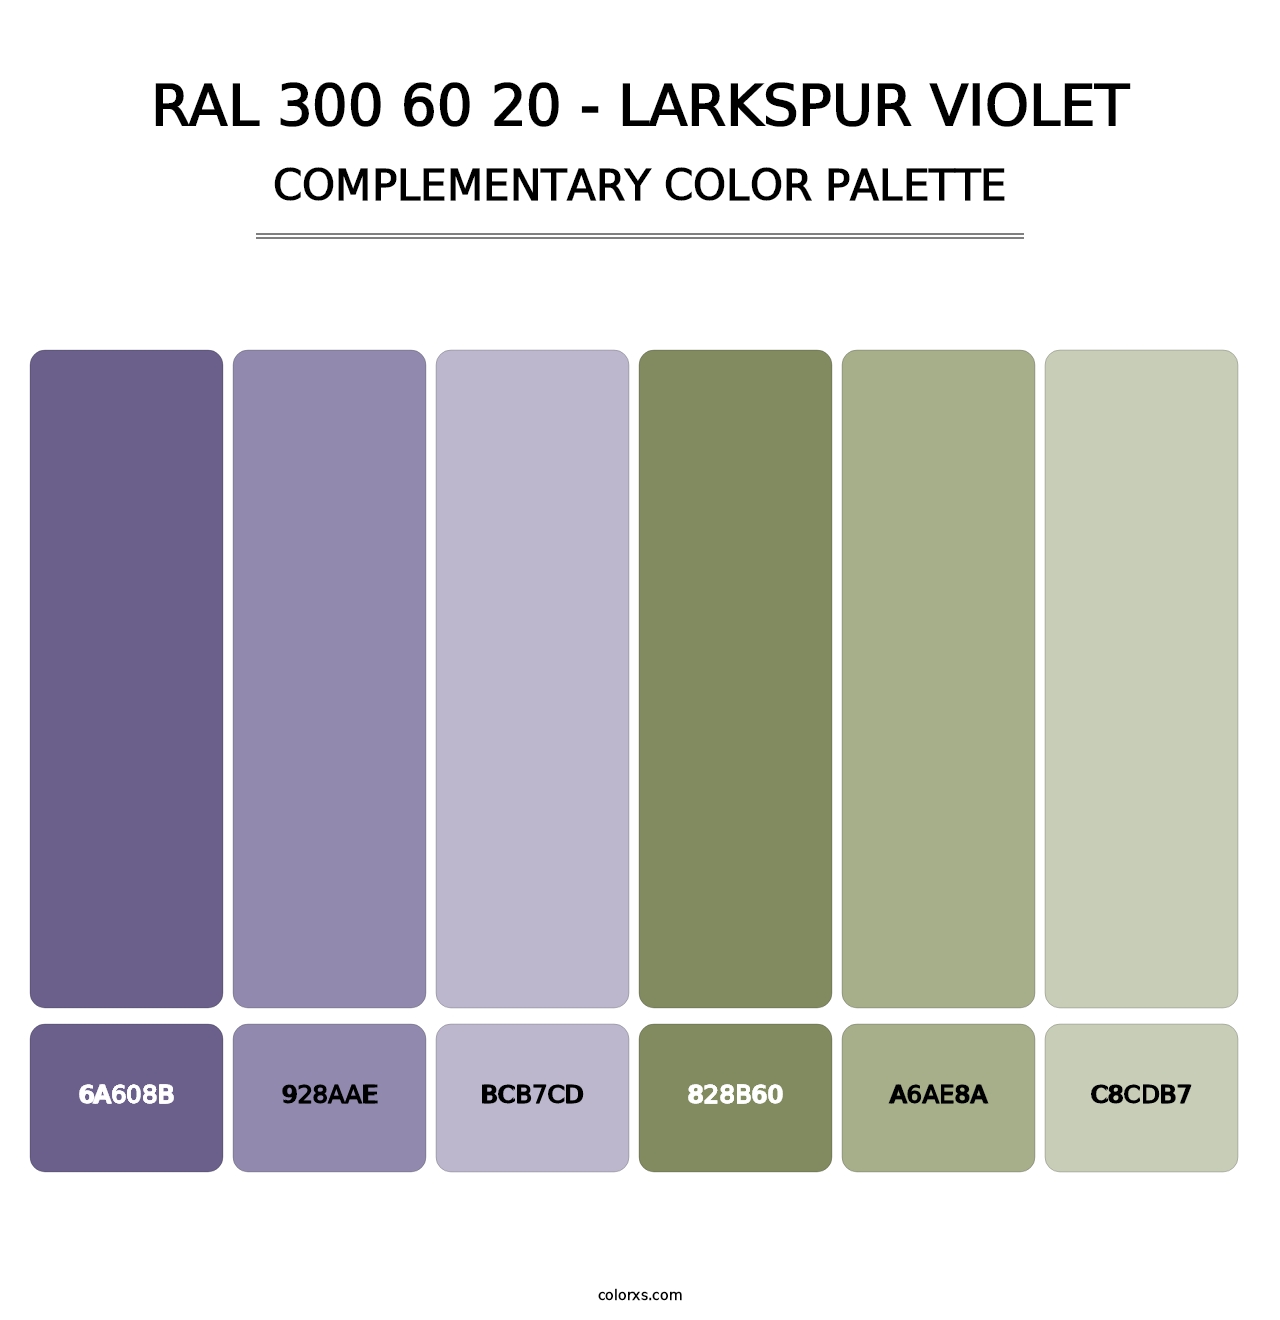 RAL 300 60 20 - Larkspur Violet - Complementary Color Palette